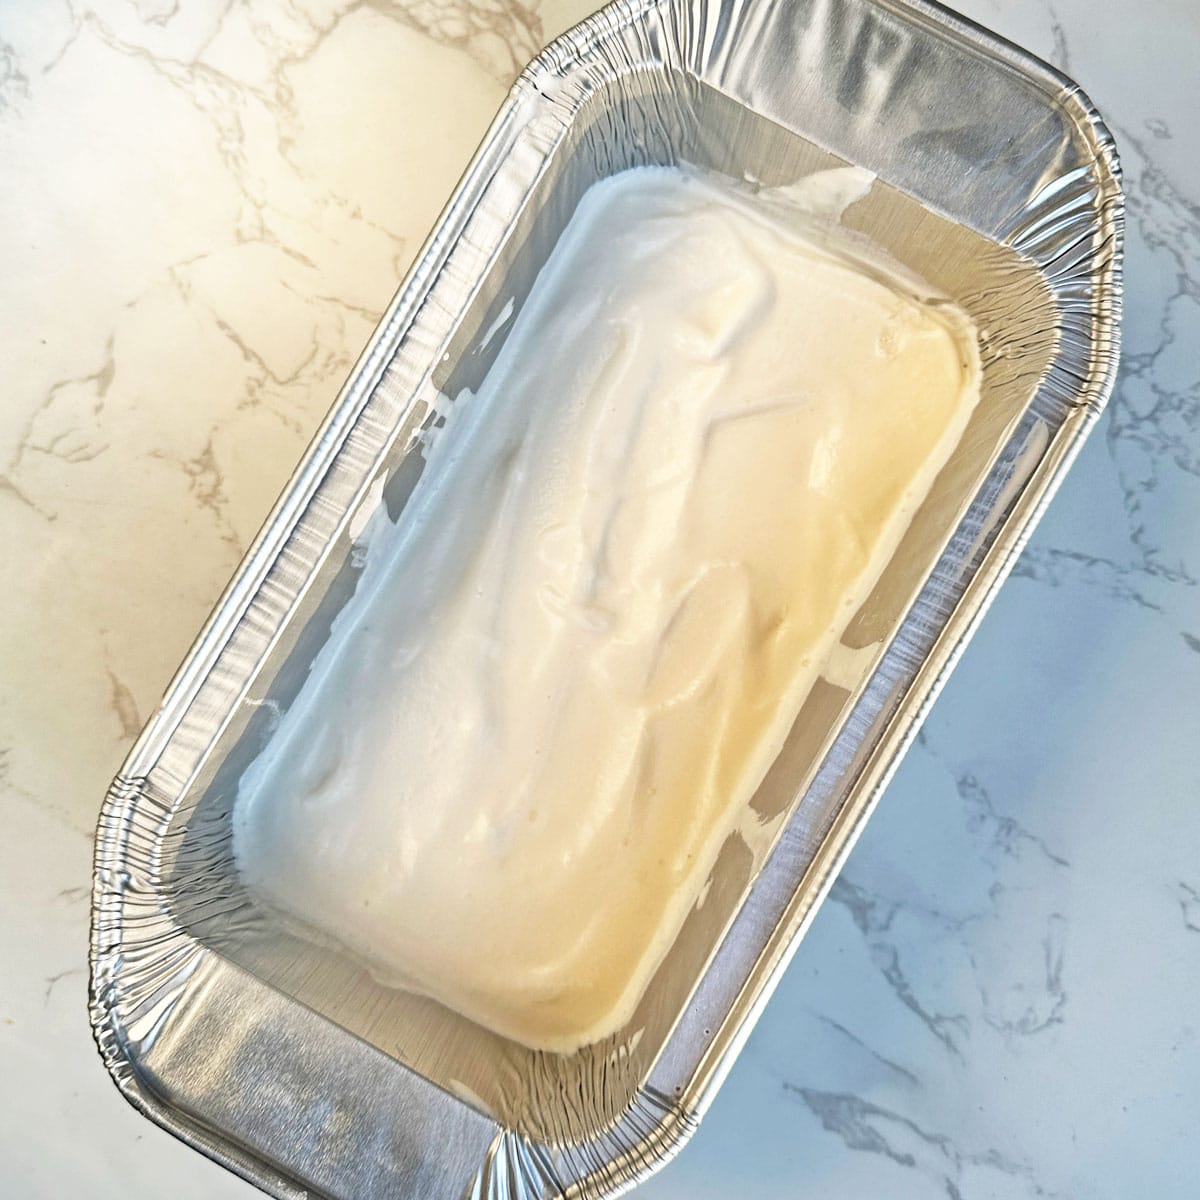 Cassata ice cream vanilla layer.